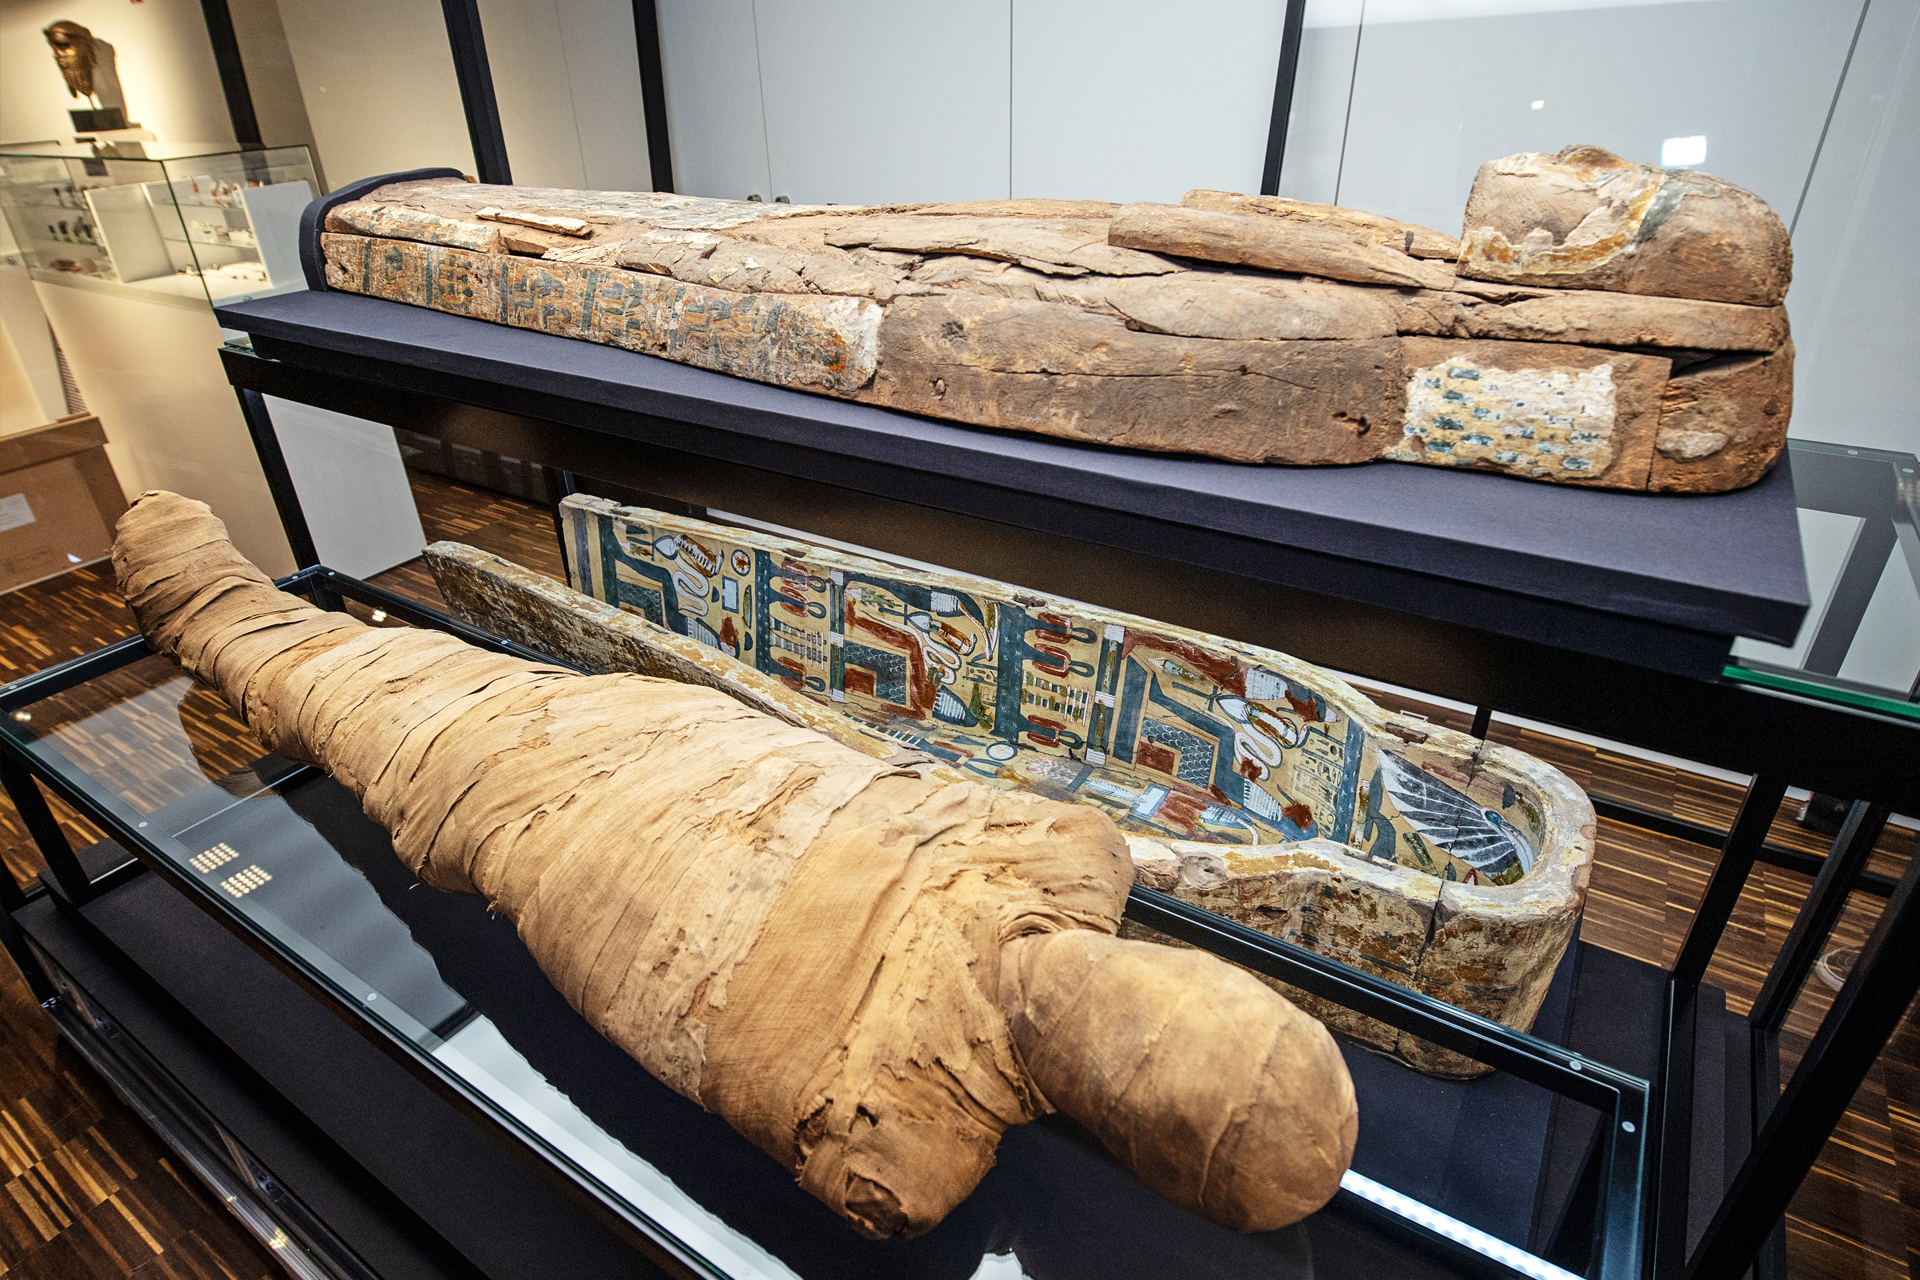 unbelievable facts - mummy egypt - T Act Borg art Sur wwwww